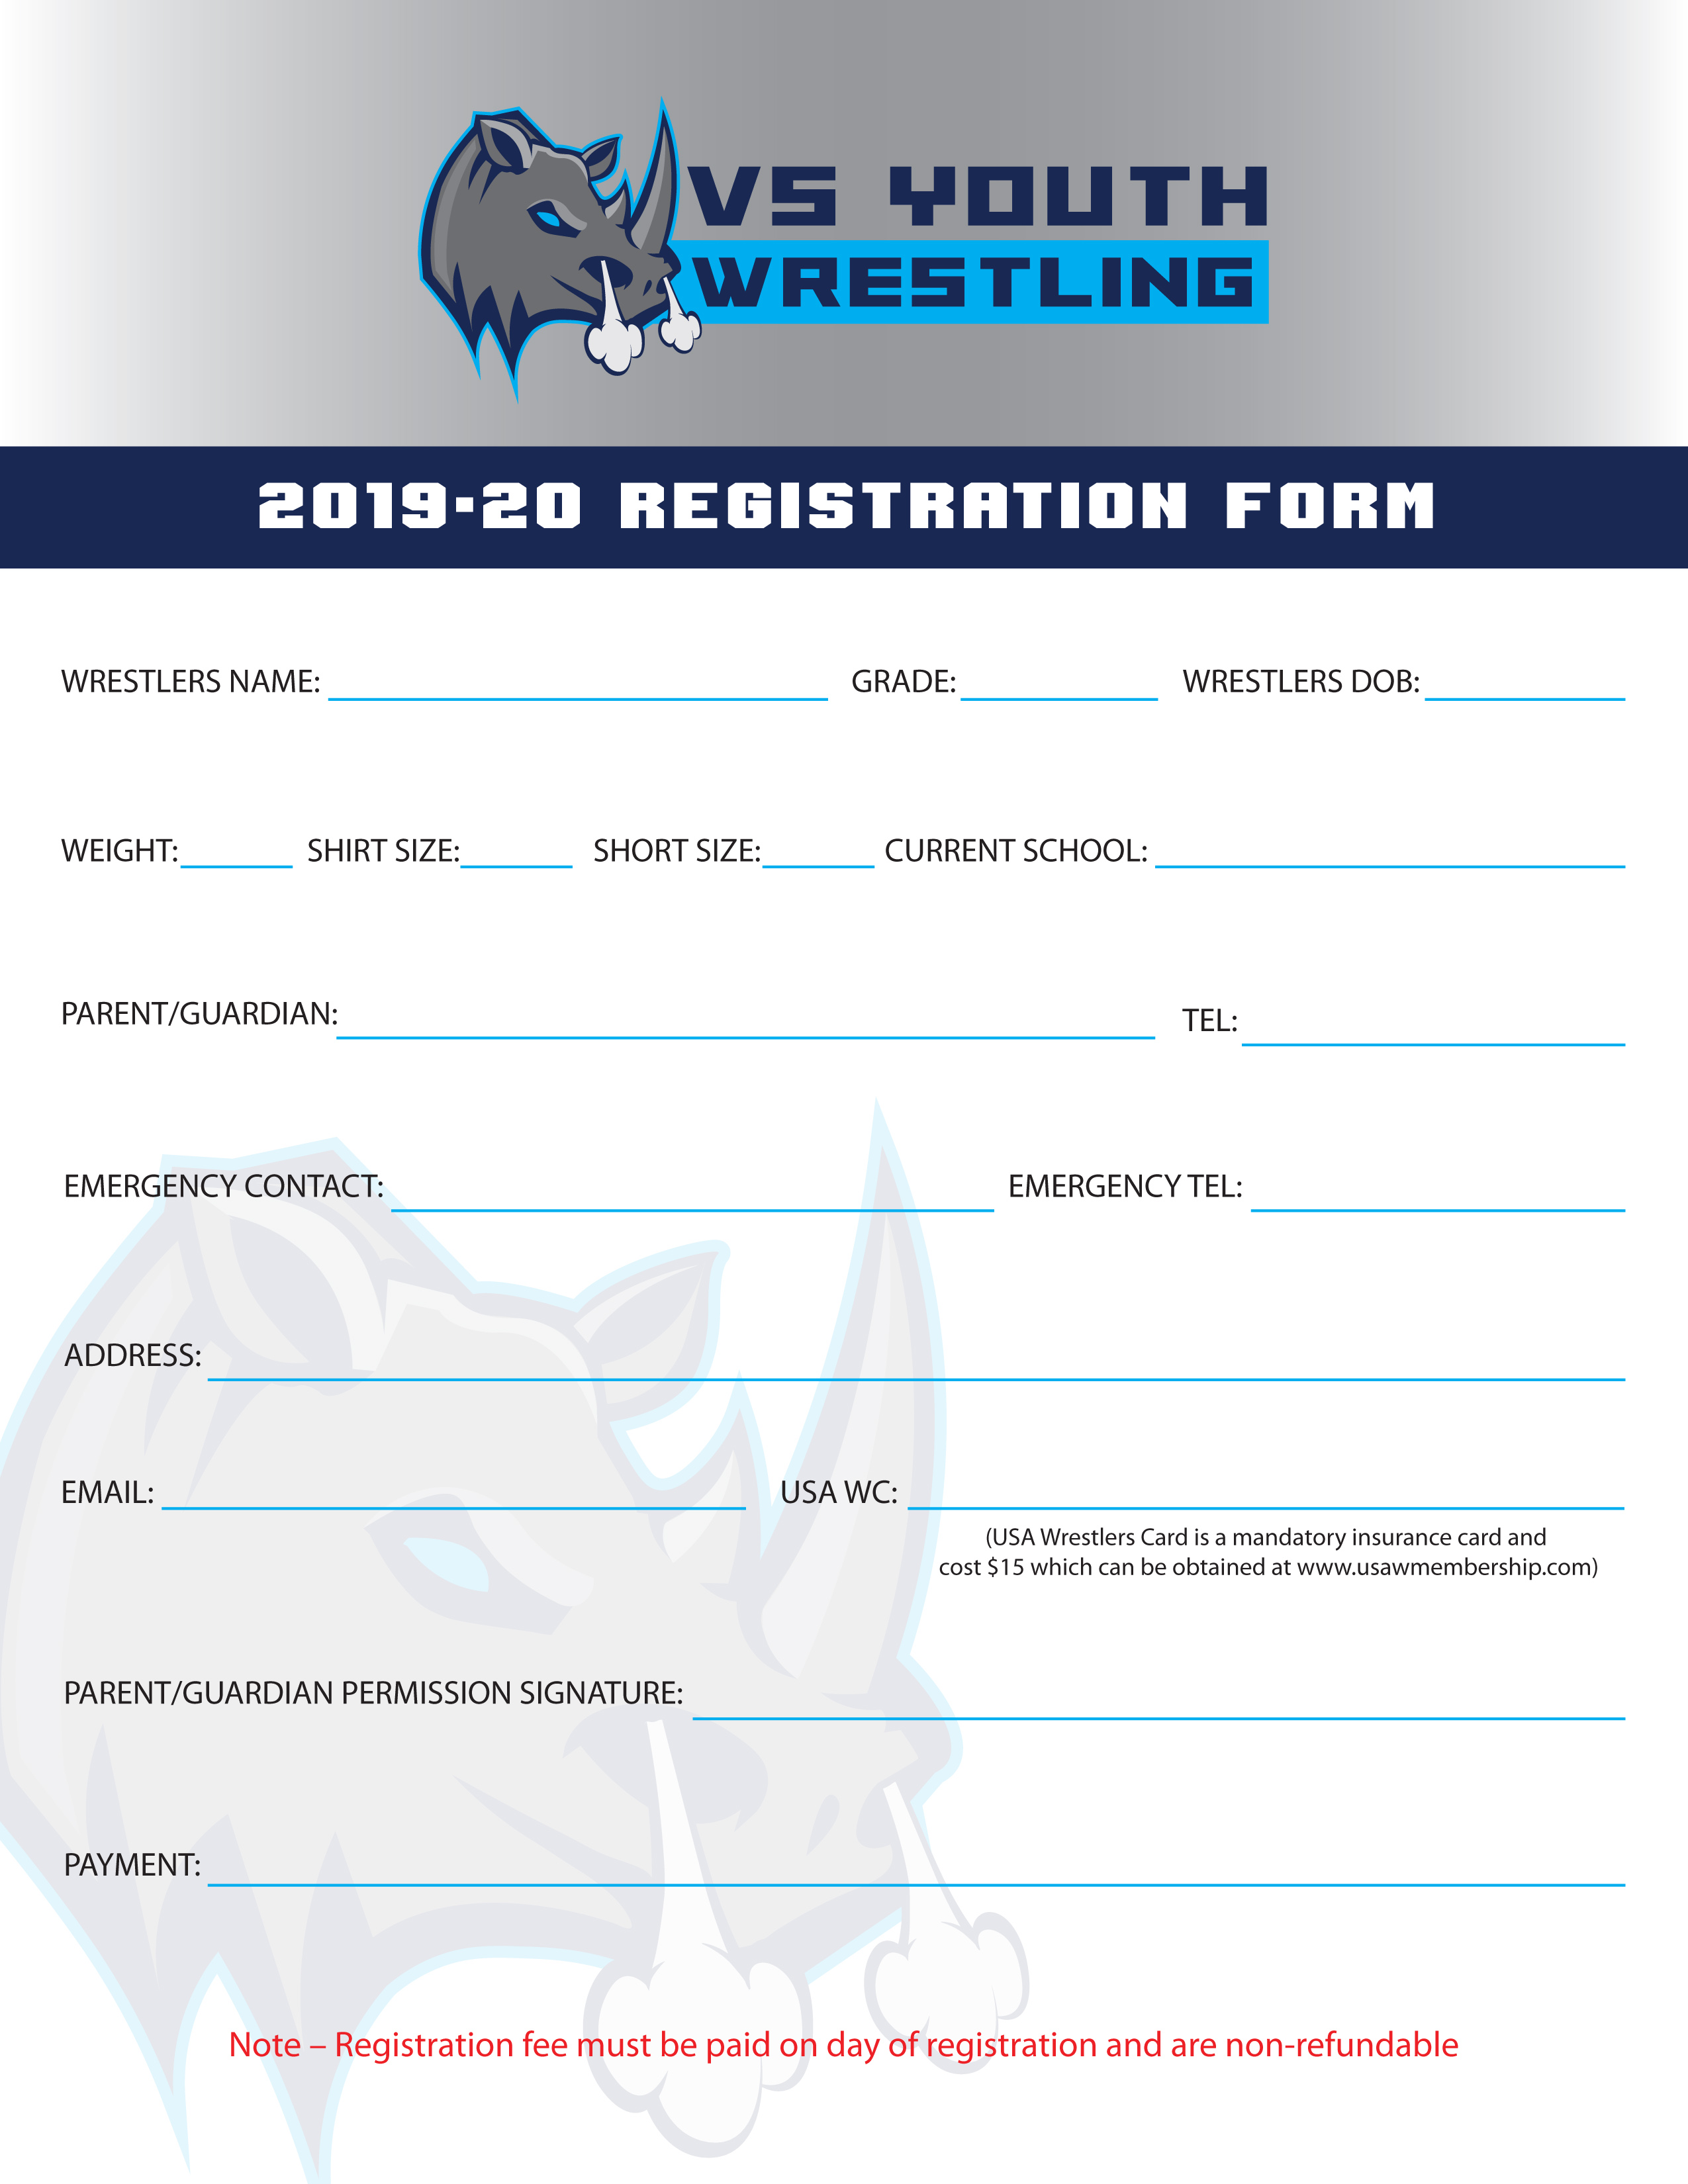 2019-2020-wrestling-registration-form